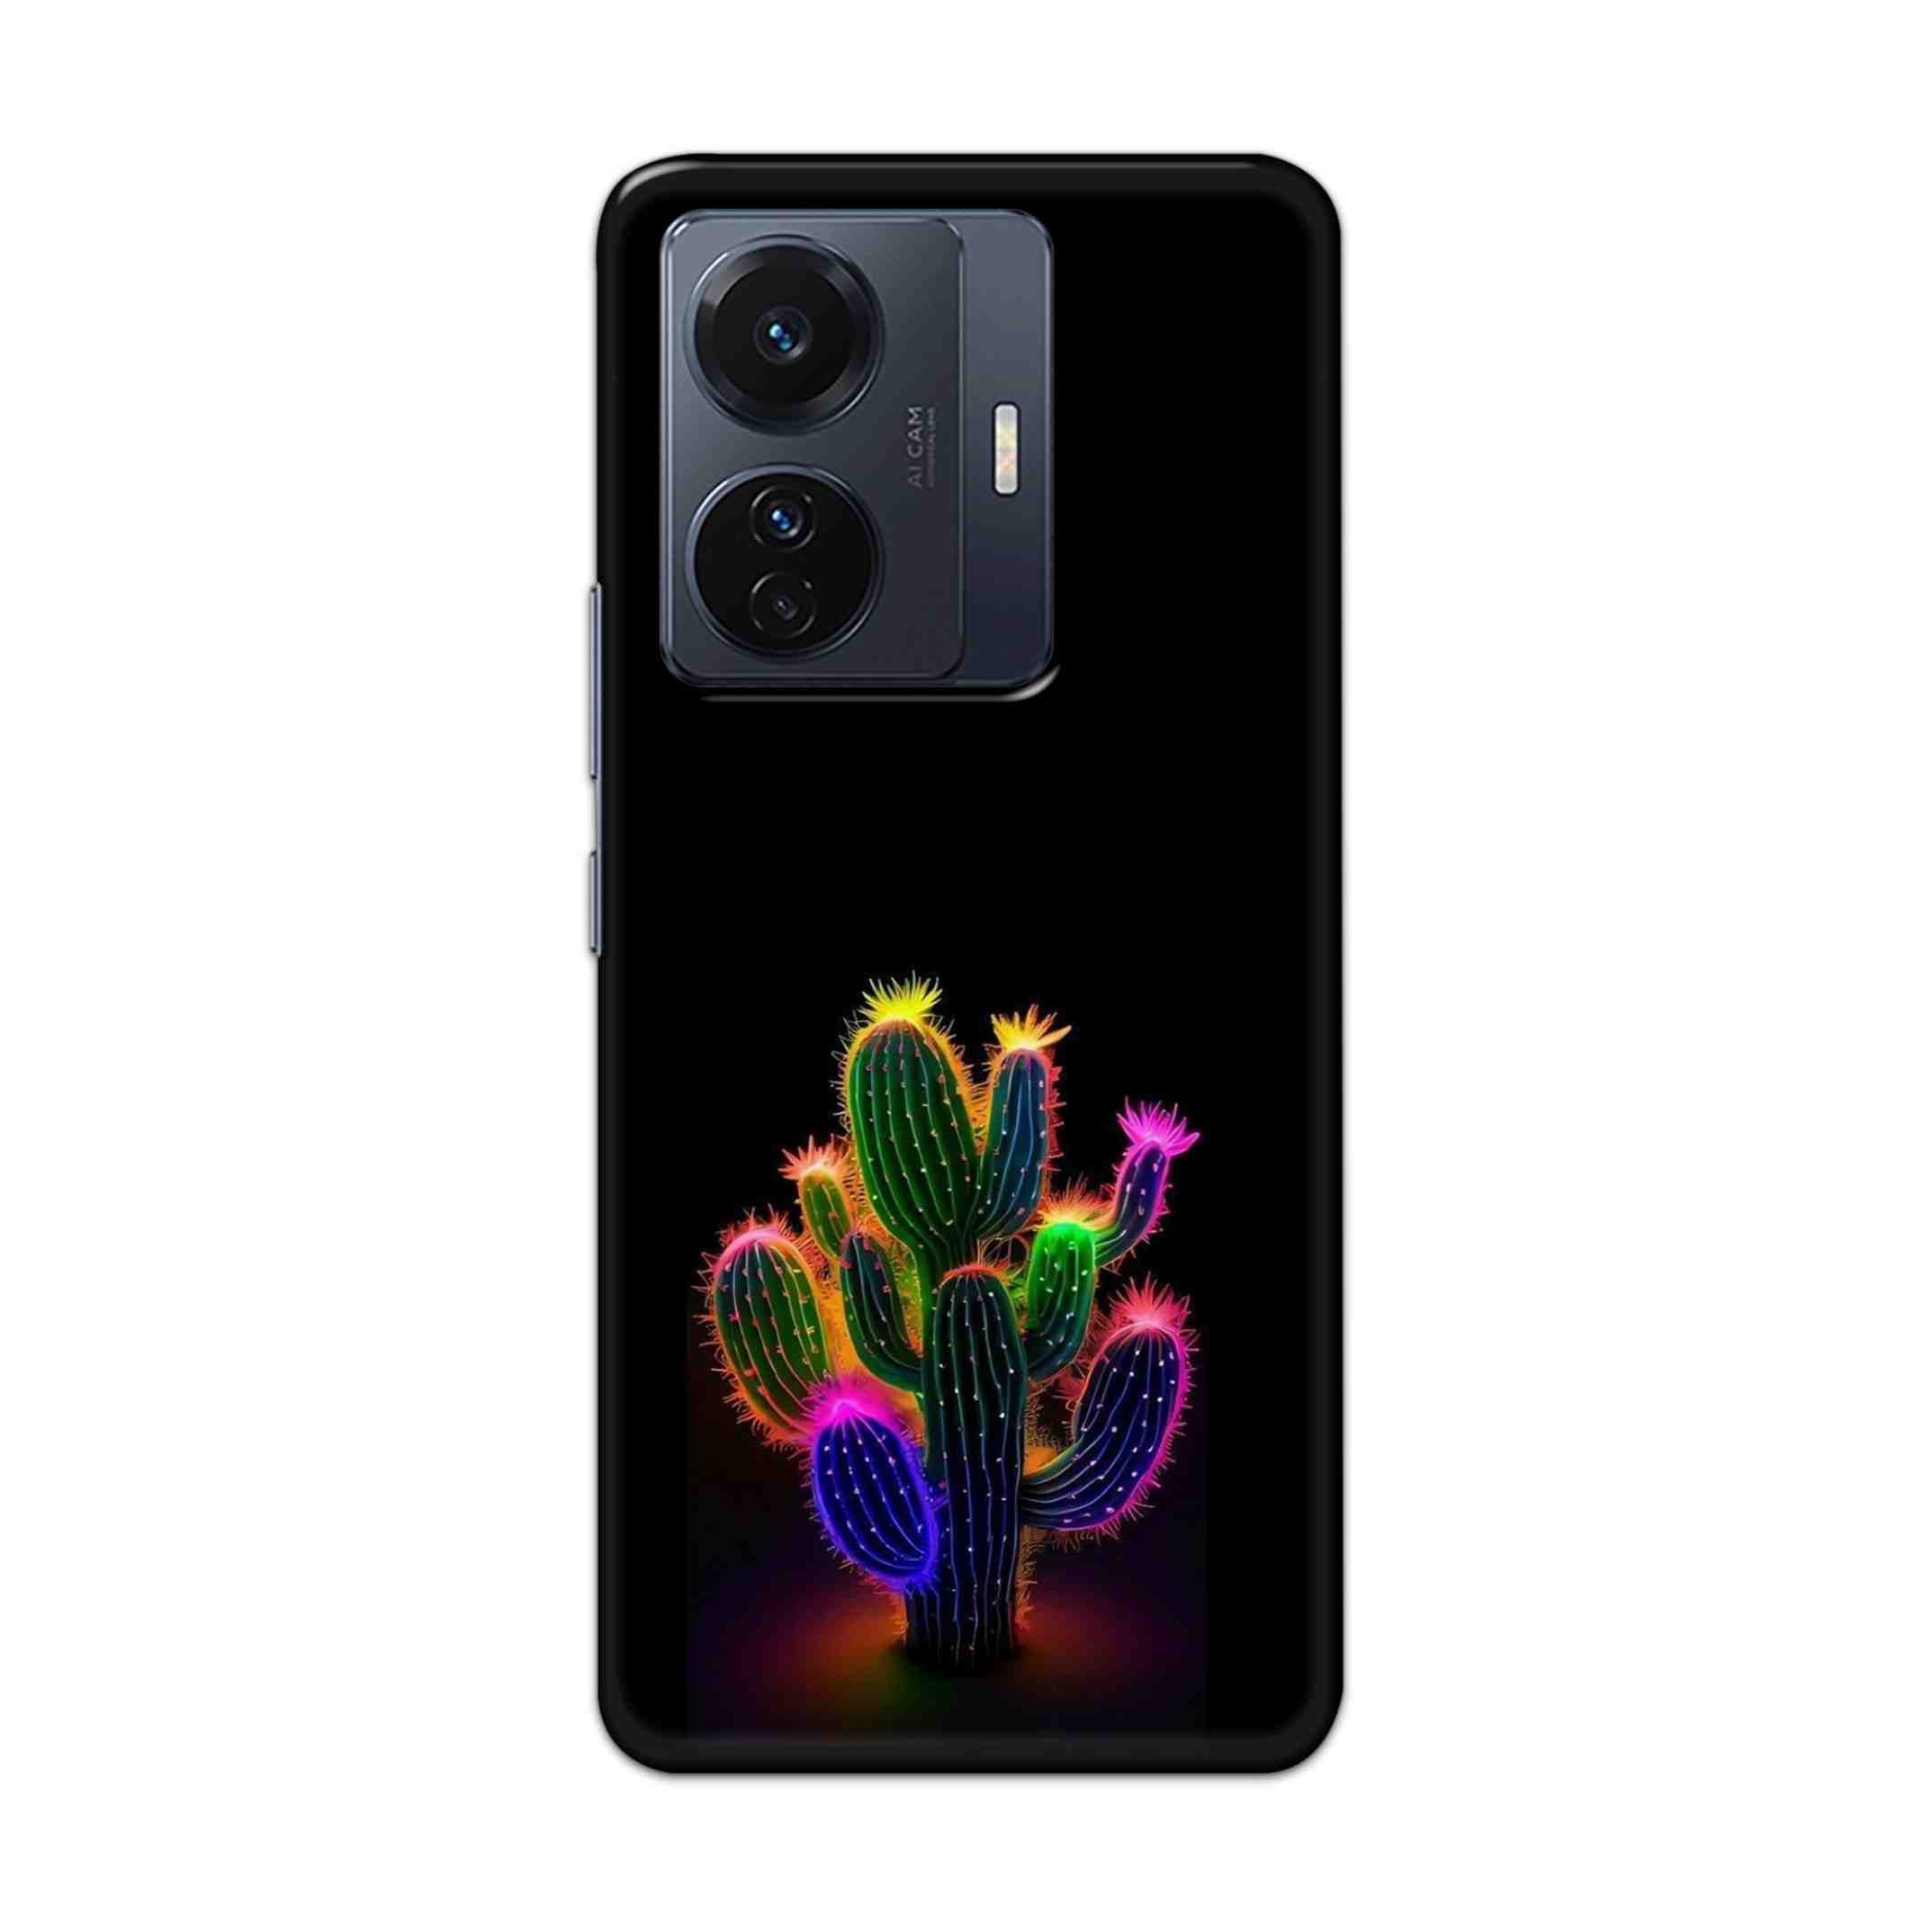 Buy Neon Flower Hard Back Mobile Phone Case Cover For Vivo T1 Pro 5G Online